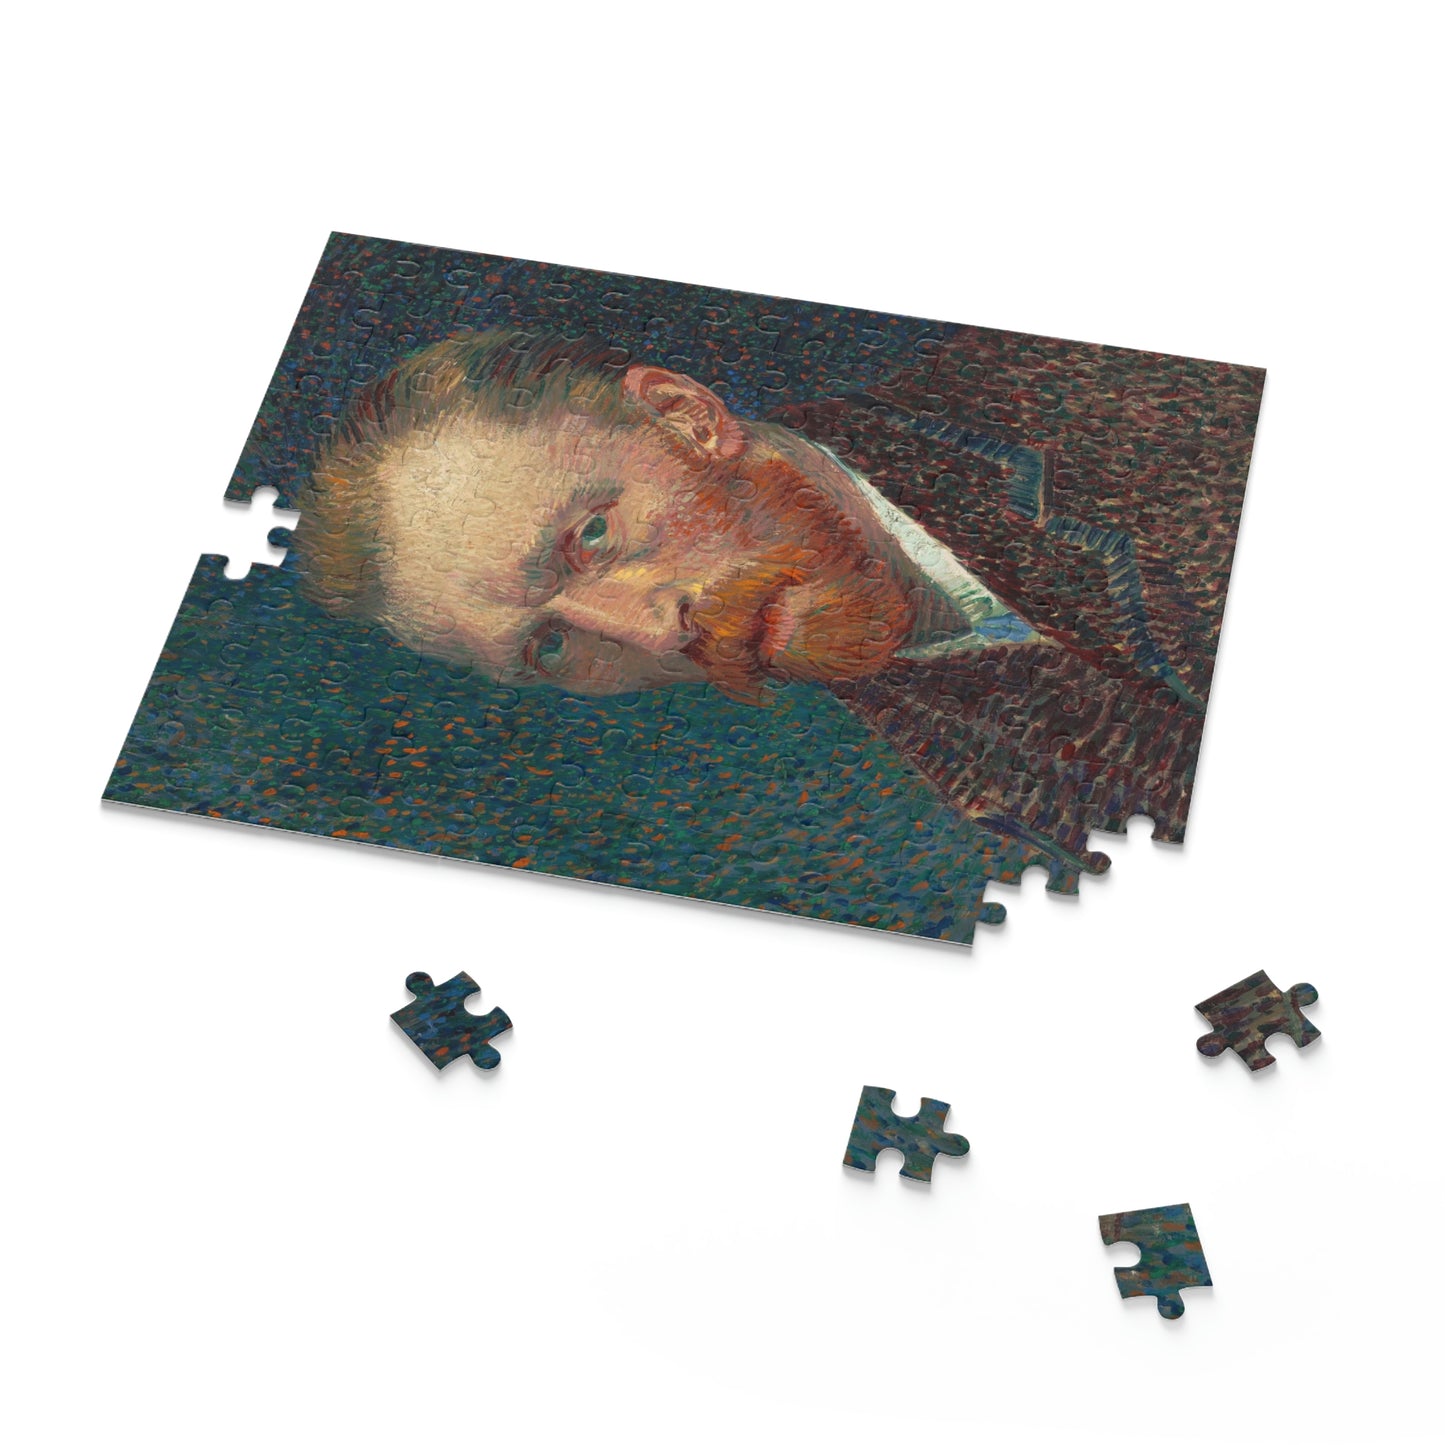 Self Portrait, Vincent Van Gogh (120, 252, 500-Piece Puzzle)